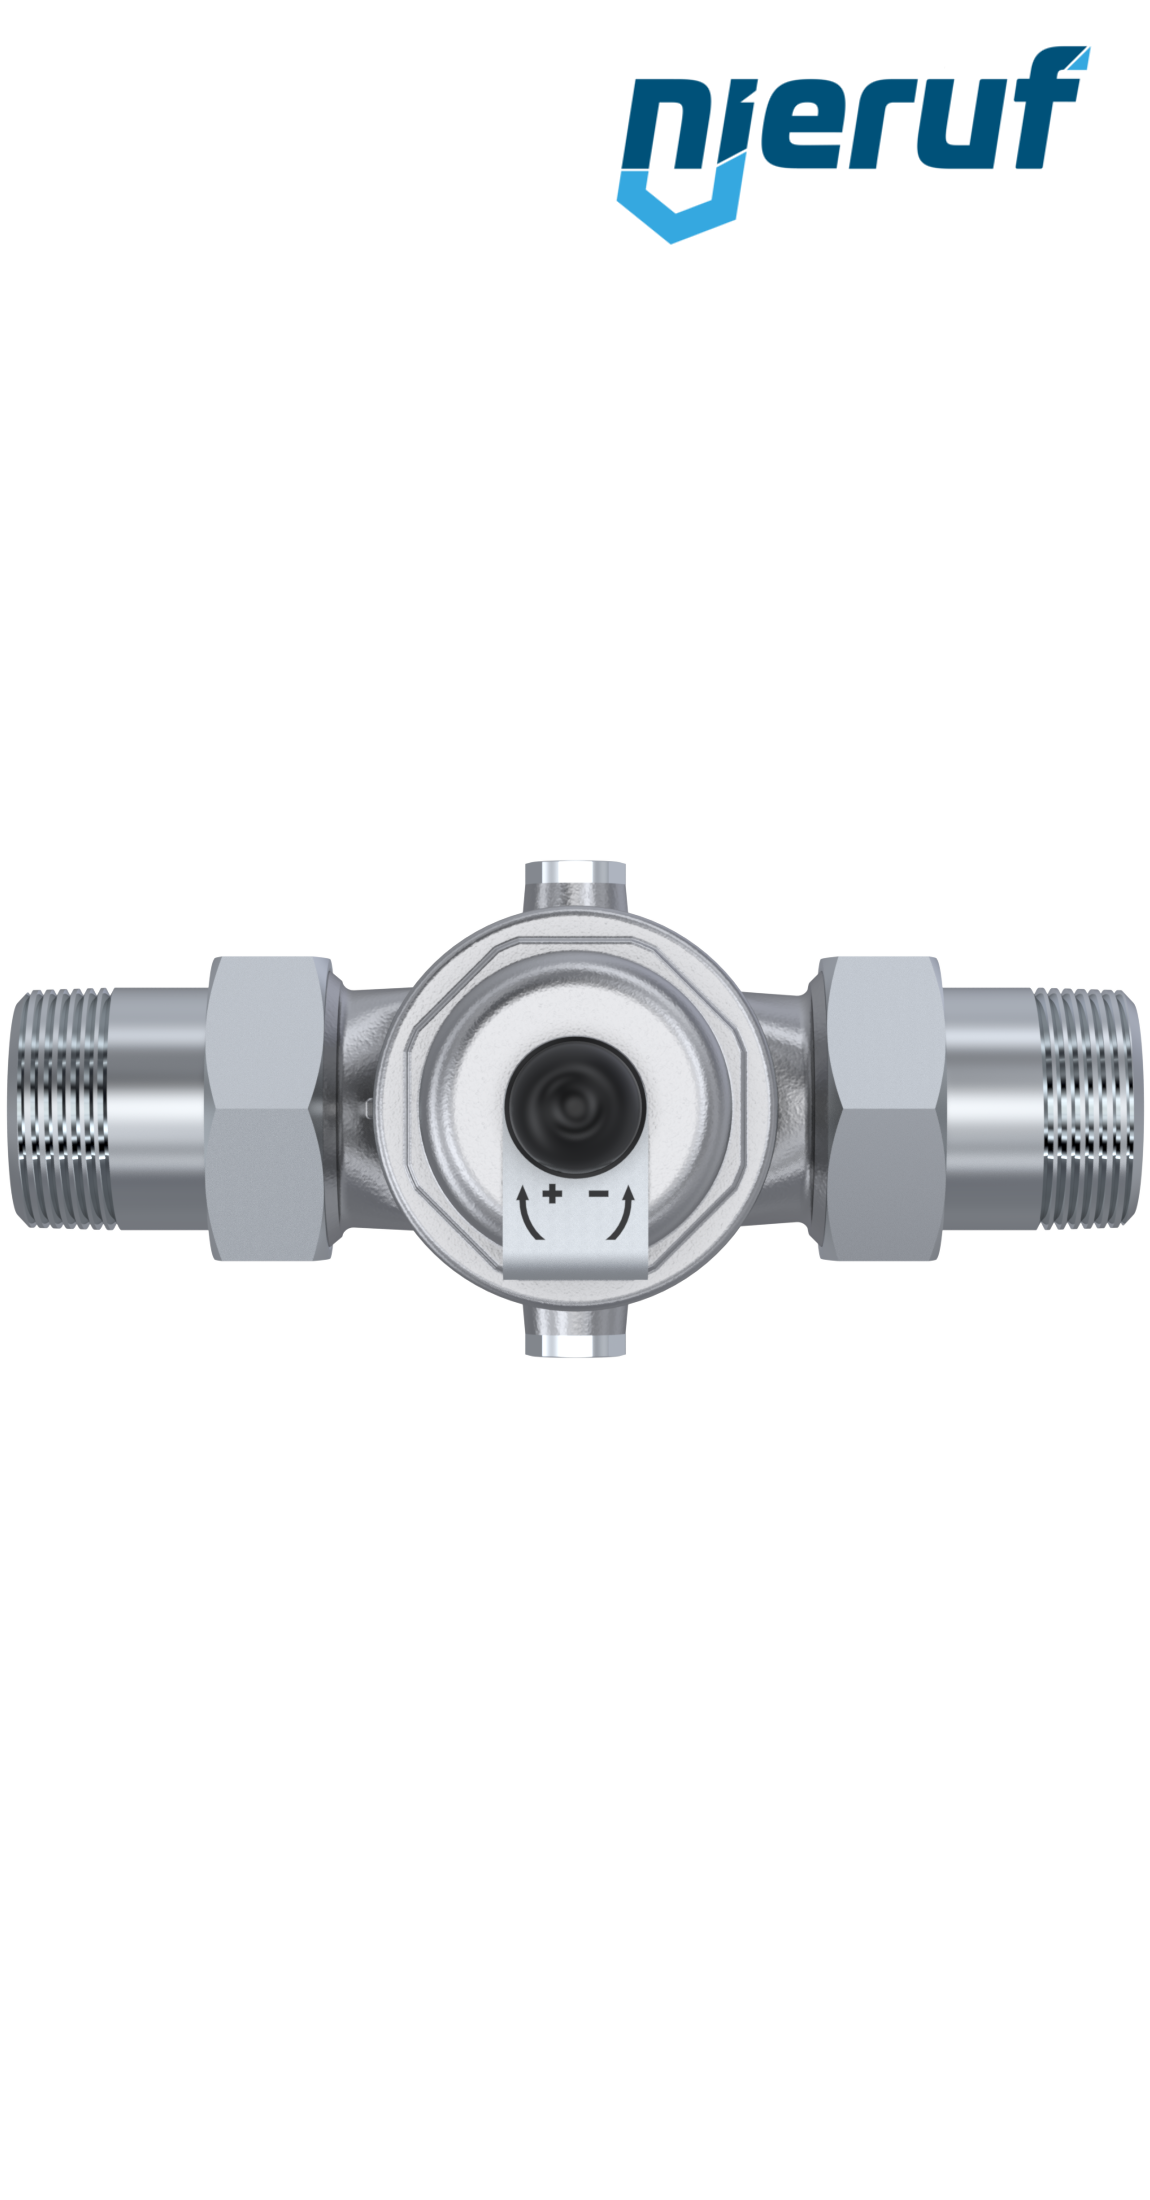 pressure reducing valve 1" inch male thread DM04 stainless steel FKM 1.0 - 8.0 bar